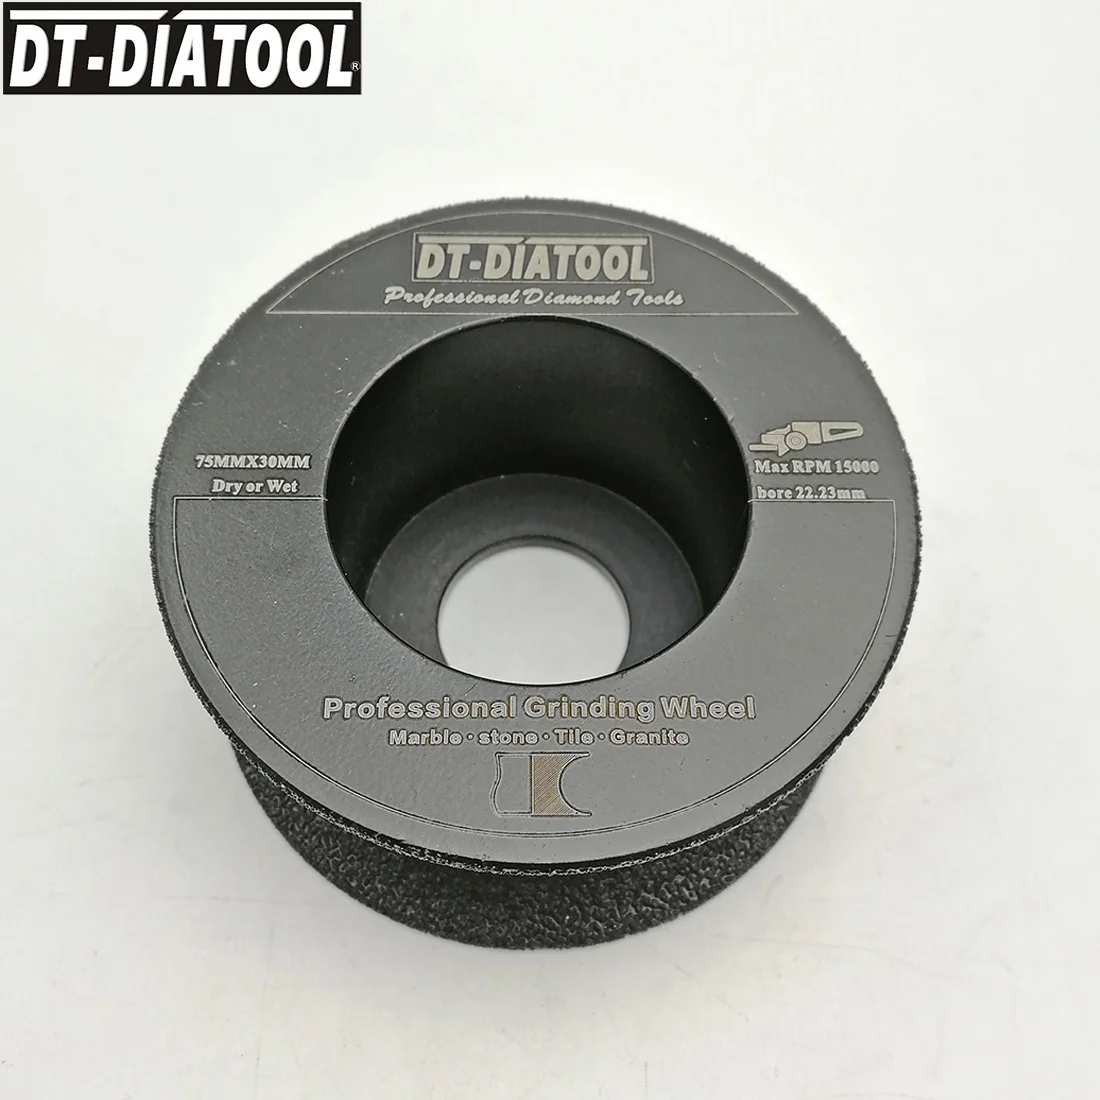 DT-DIATOOL 1 шт. диаметр " /75 мм Вакуумные Паяные алмазный шлифовальный диск полуботинок от закаленное стекло с закругленными краями алмазного колеса сухой или в любой другой влажной толщиной 15/20/30 мм